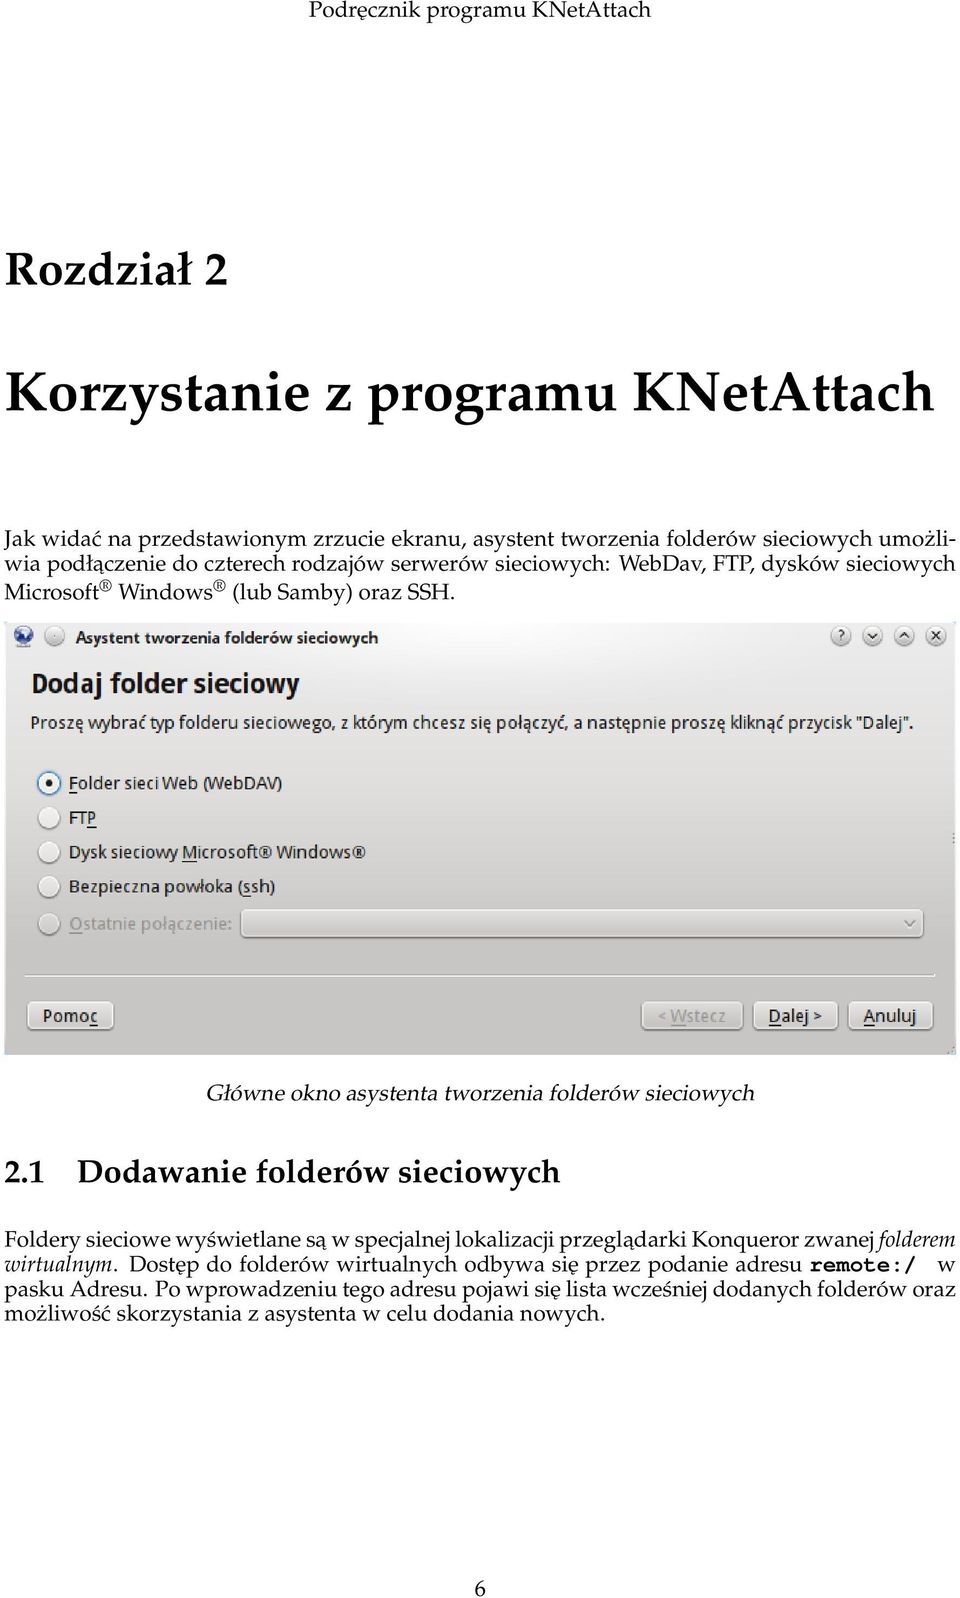 1 Dodawanie folderów sieciowych Foldery sieciowe wyświetlane sa w specjalnej lokalizacji przegladarki Konqueror zwanej folderem wirtualnym.